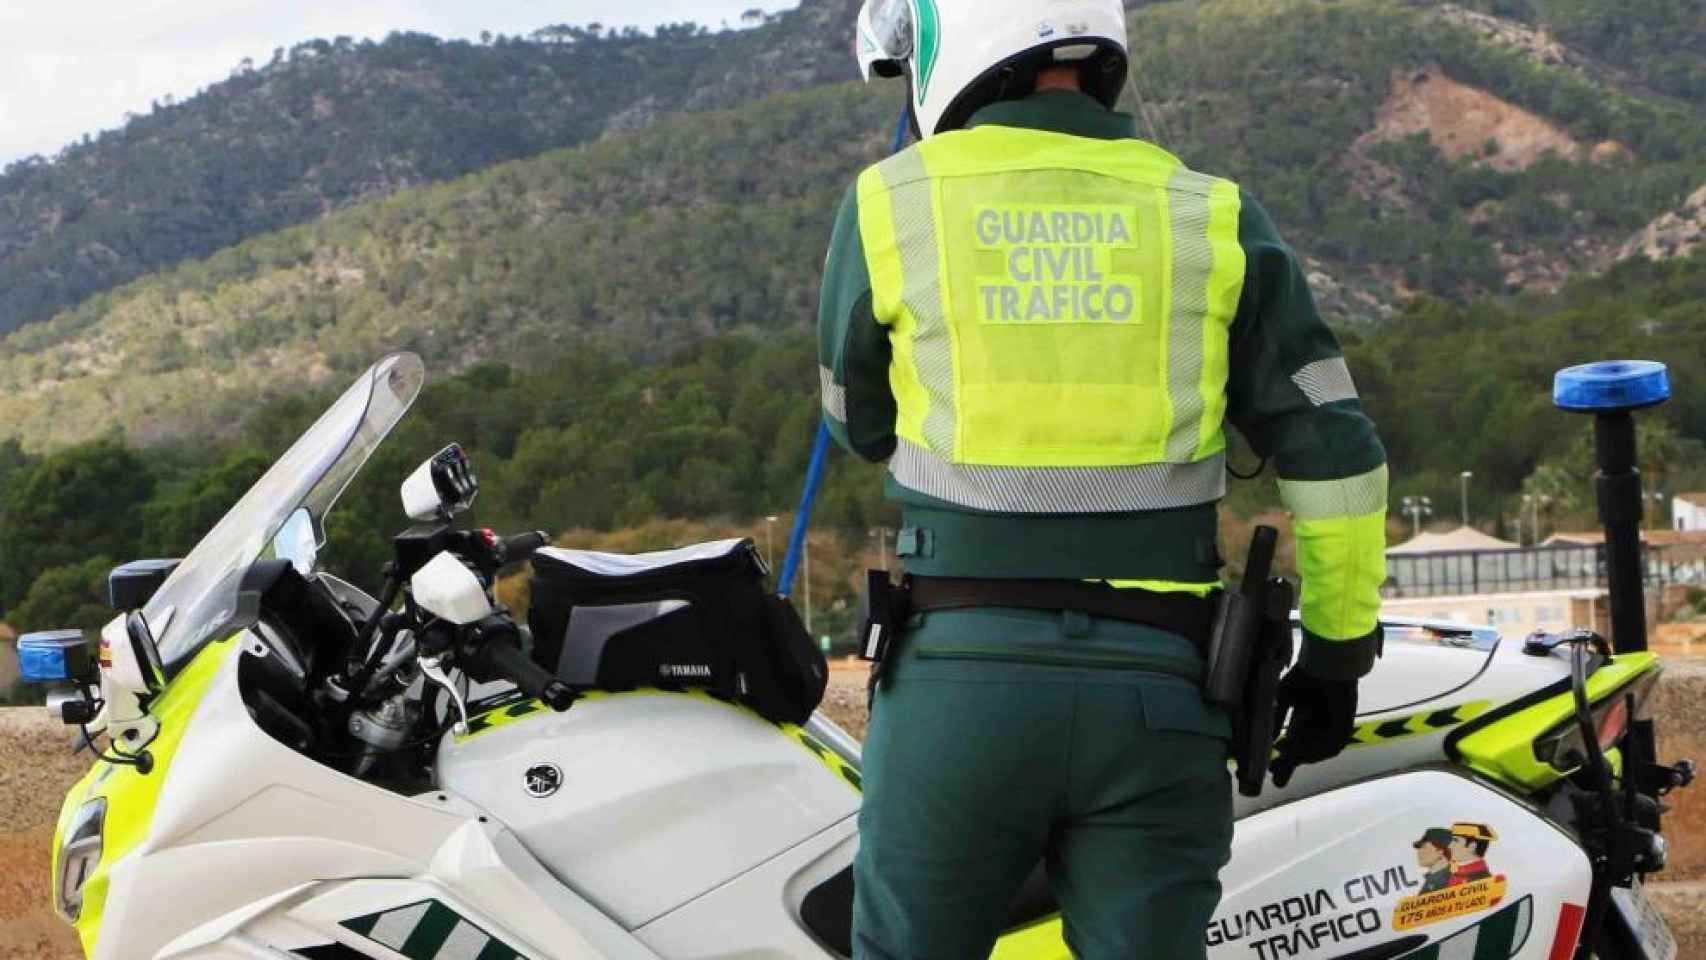 Campaña intensiva de la DGT de vigilancia y control de motos estos días